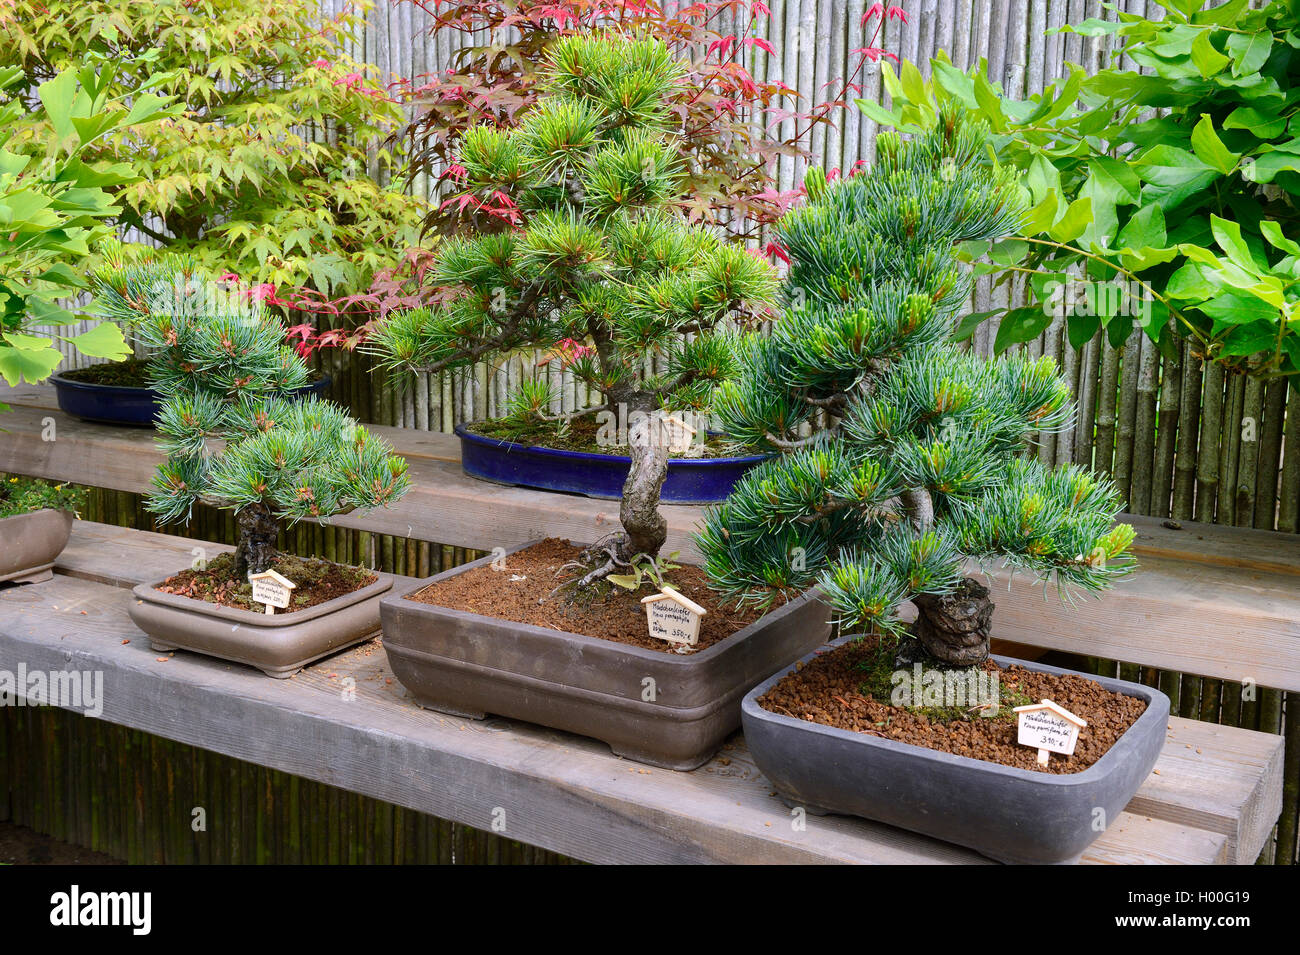 Japanese white pine (Pinus parviflora, Pinus pentaphylla), bonsai tree Stock Photo